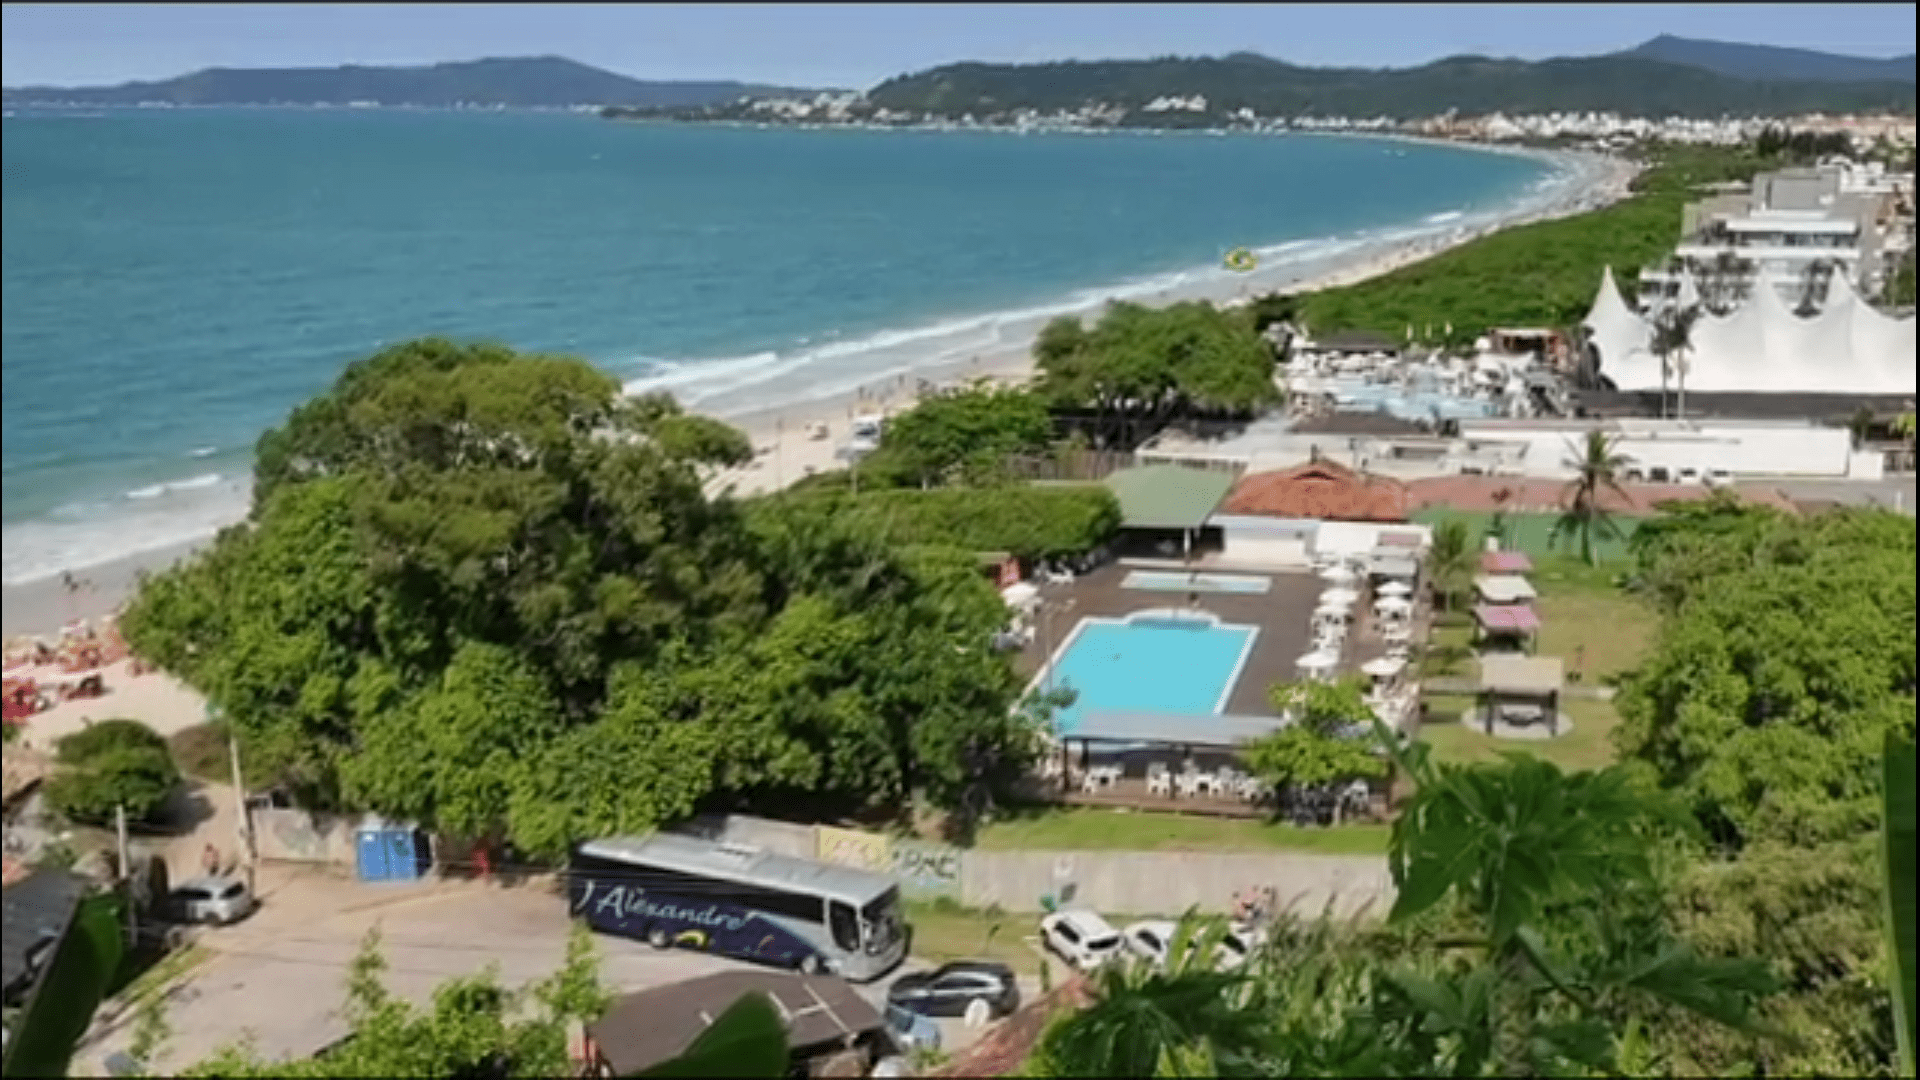 14 Retiro Nacional - Florianópolis - SC : Conhecendo as belezas da ilha de Florianópolis - SC.